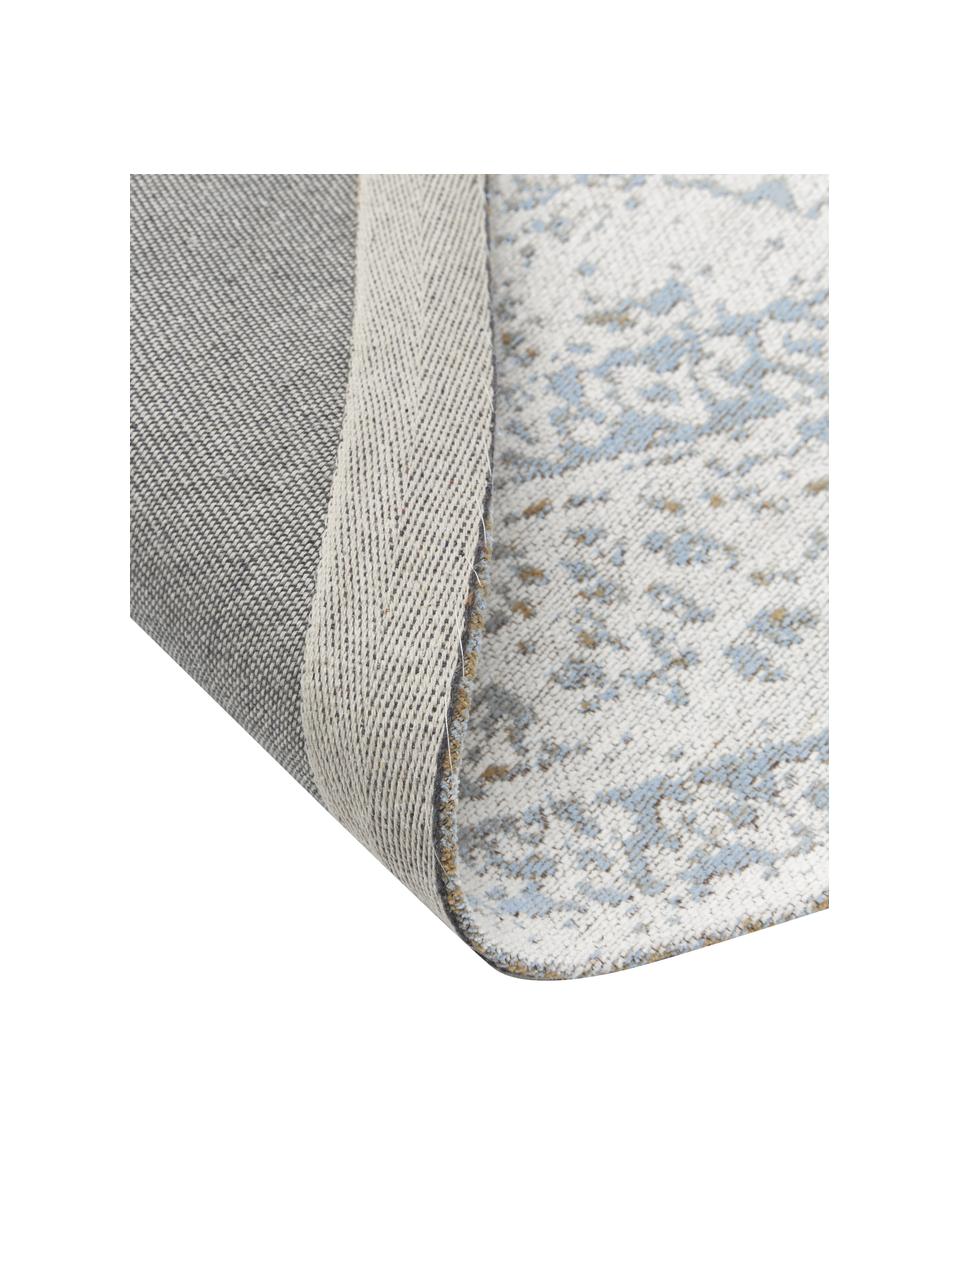 Okrągły ręcznie tkany dywan szenilowy Neapel, Szaroniebieski, kremowobiały, taupe, Ø 250 cm (Rozmiar XL)